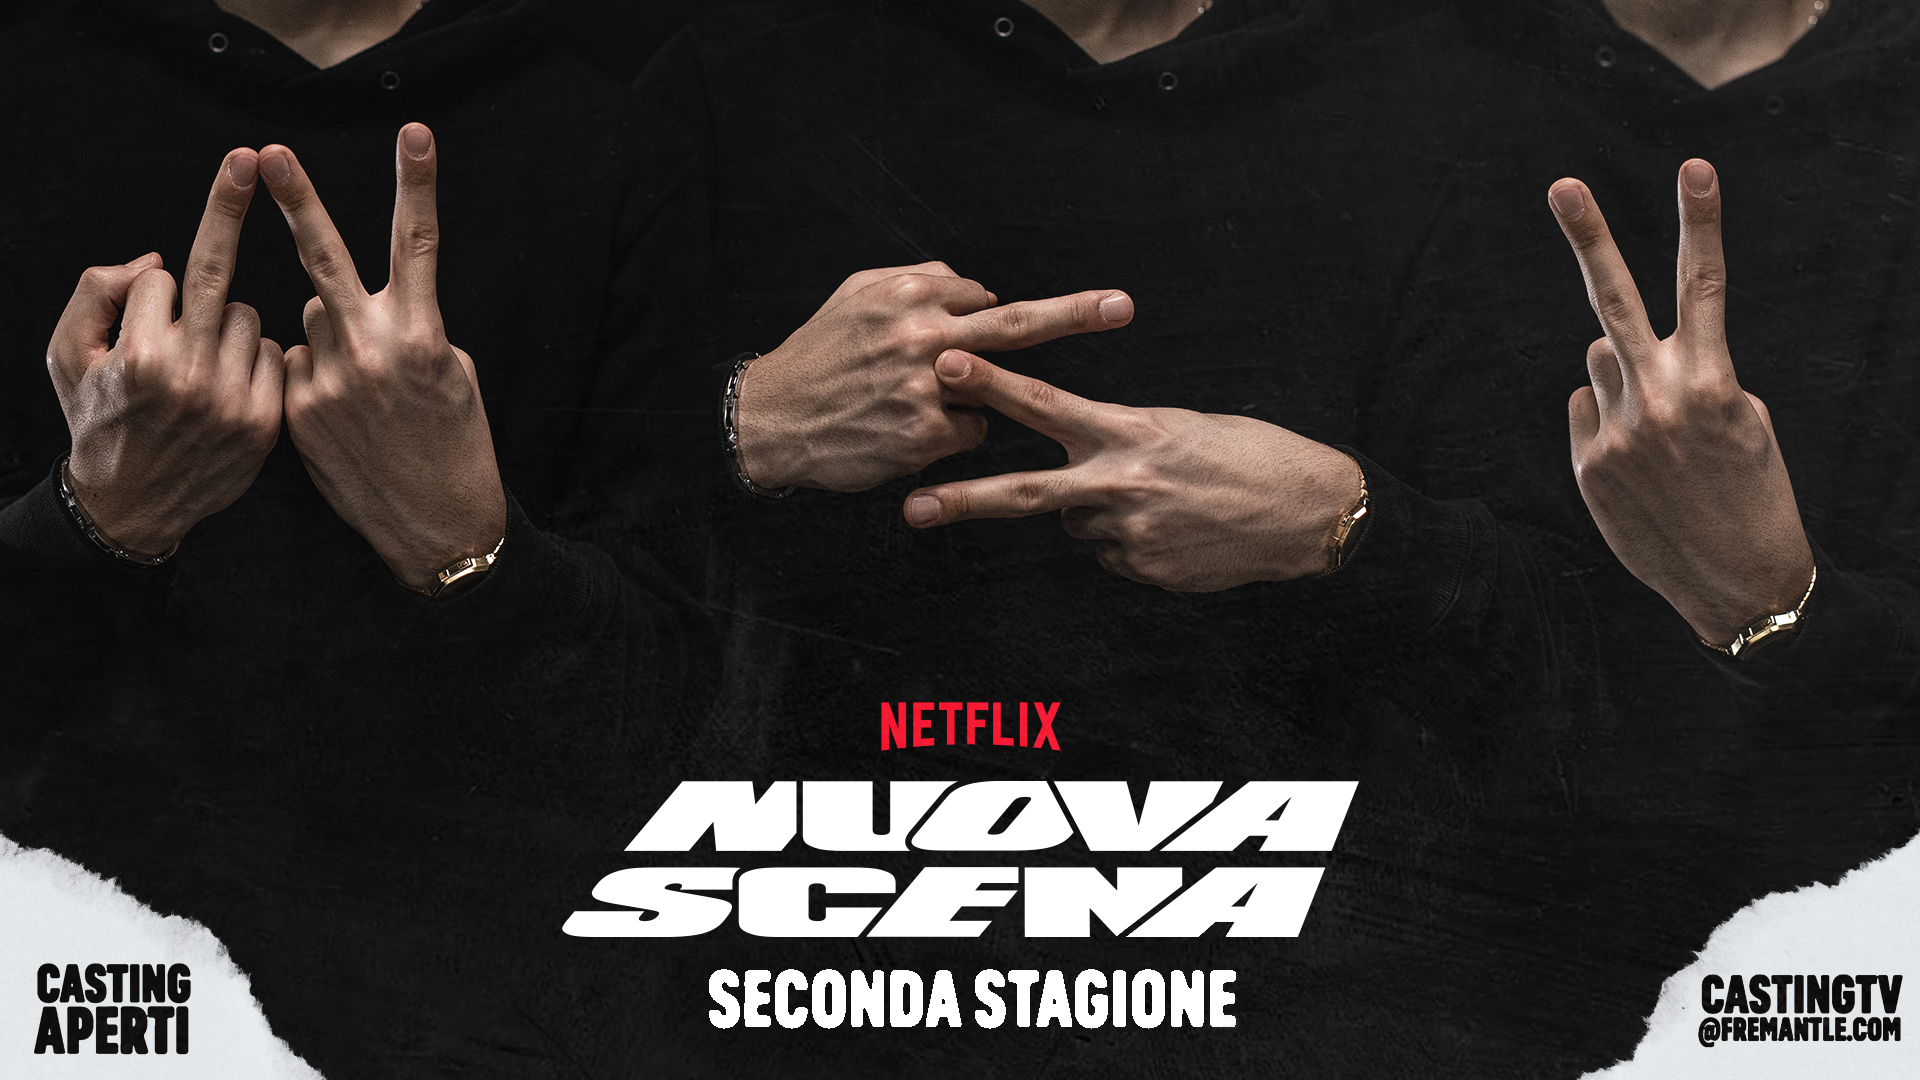 Netflix: confermata la seconda stagione di “nuova scena”, al via i casting